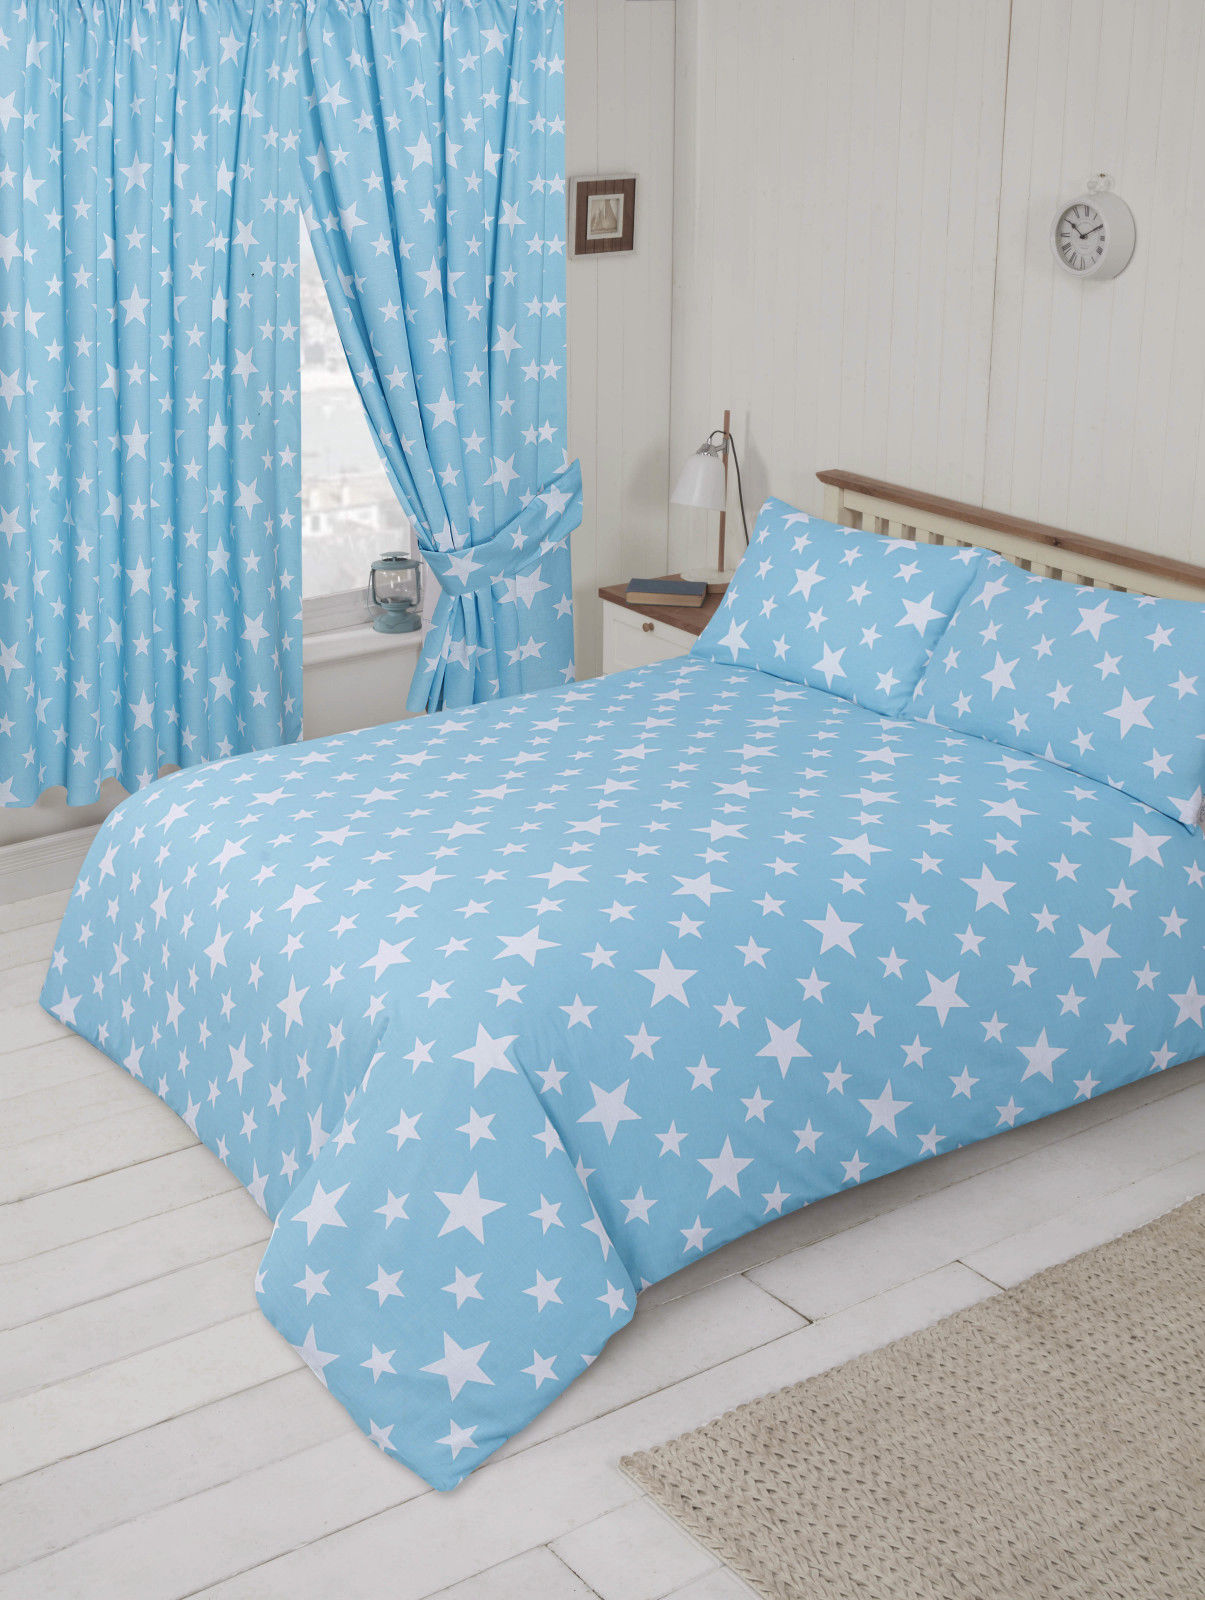 Double Bed Duvet Cover Set Stars Duck Egg Baby Blue Bedding Set